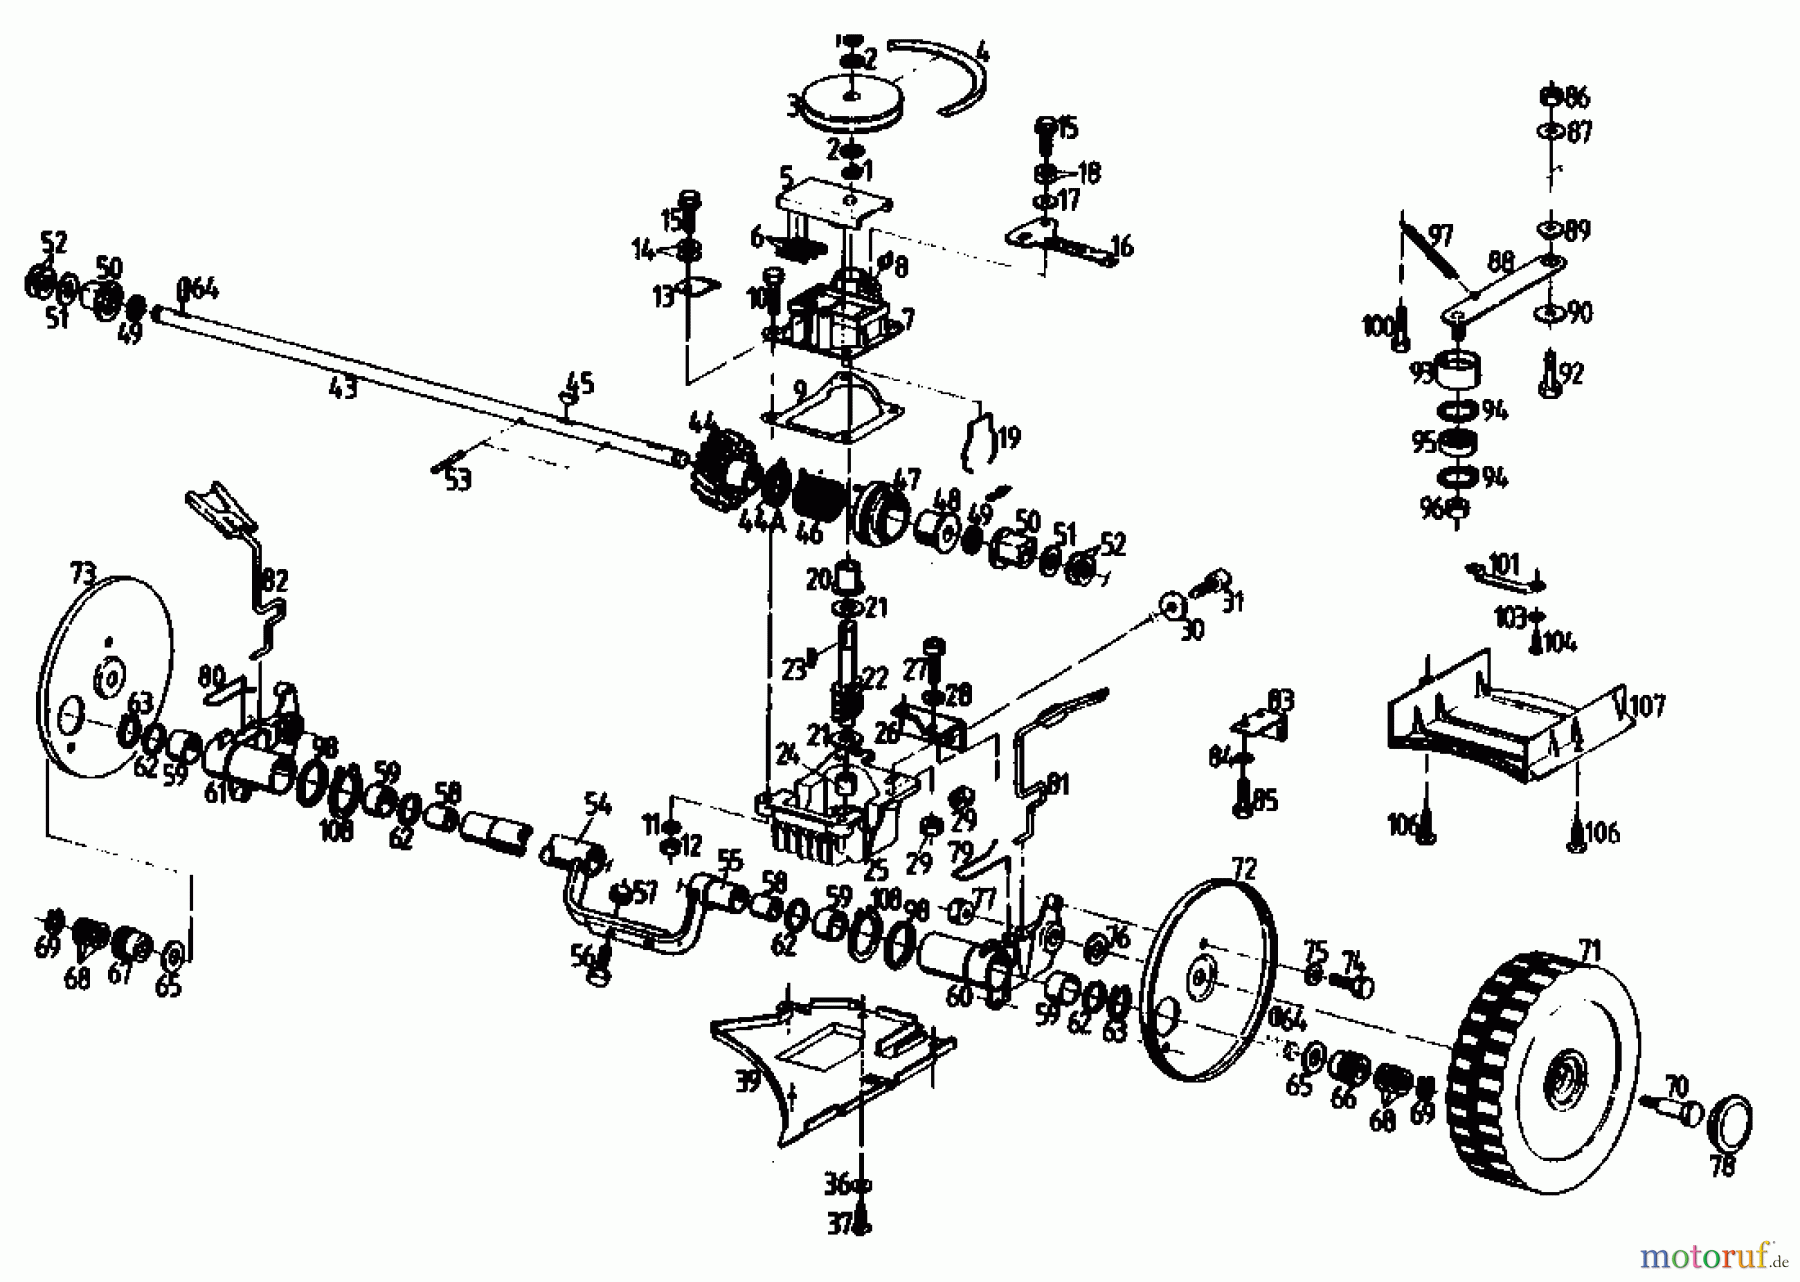  Golf Petrol mower self propelled 345 HR 4 02847.04  (1990) Gearbox